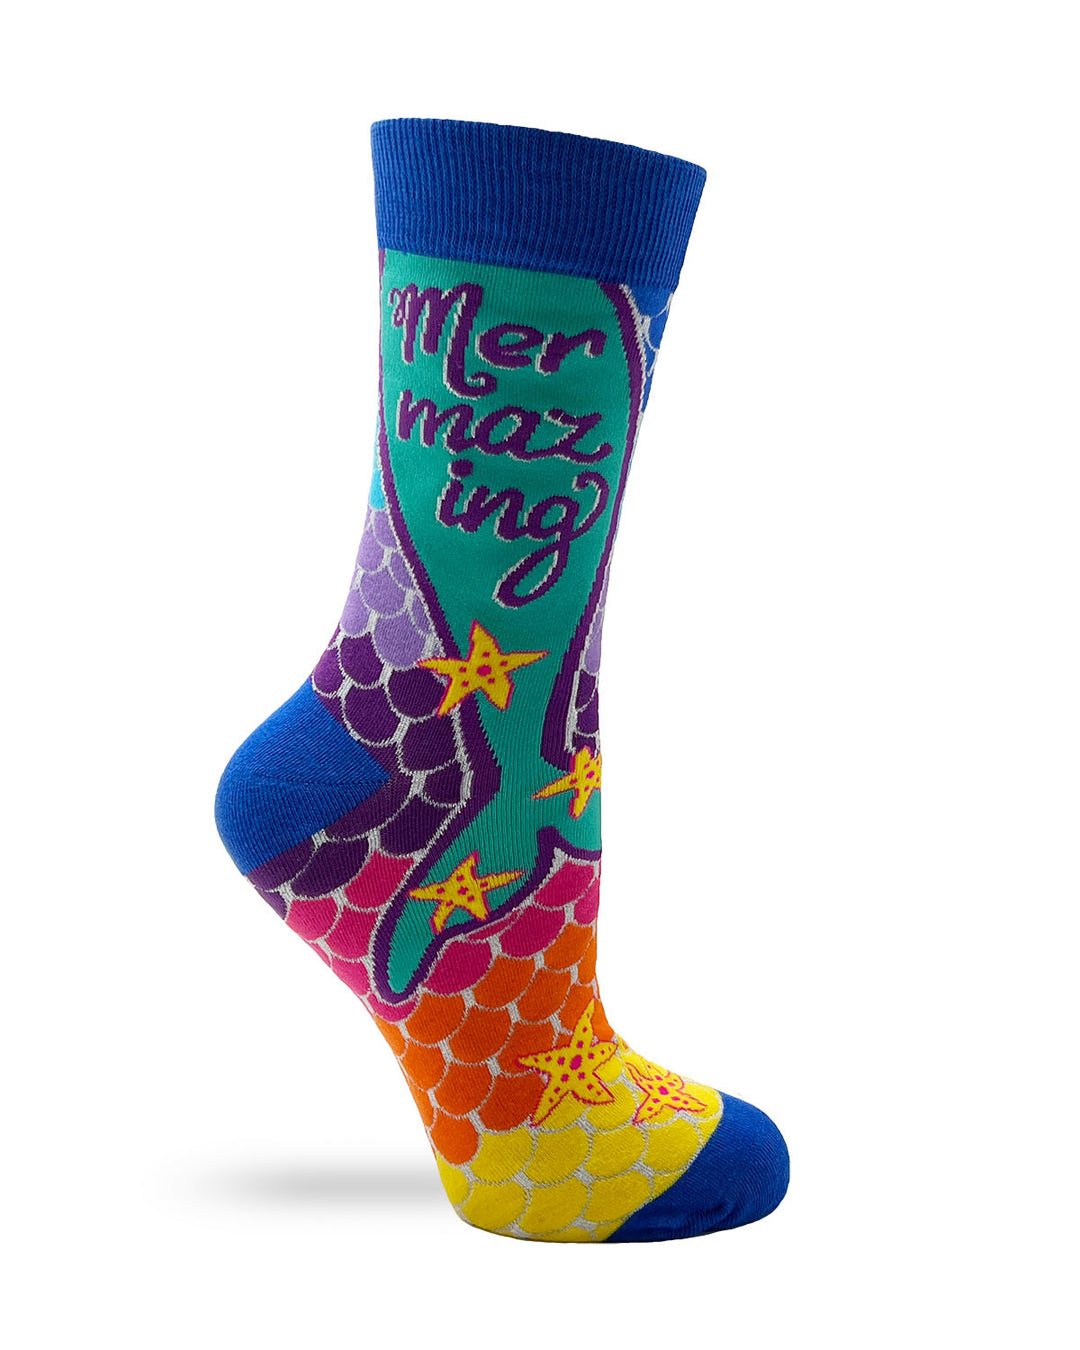 Mermazing Ladies' Novelty Crew Socks